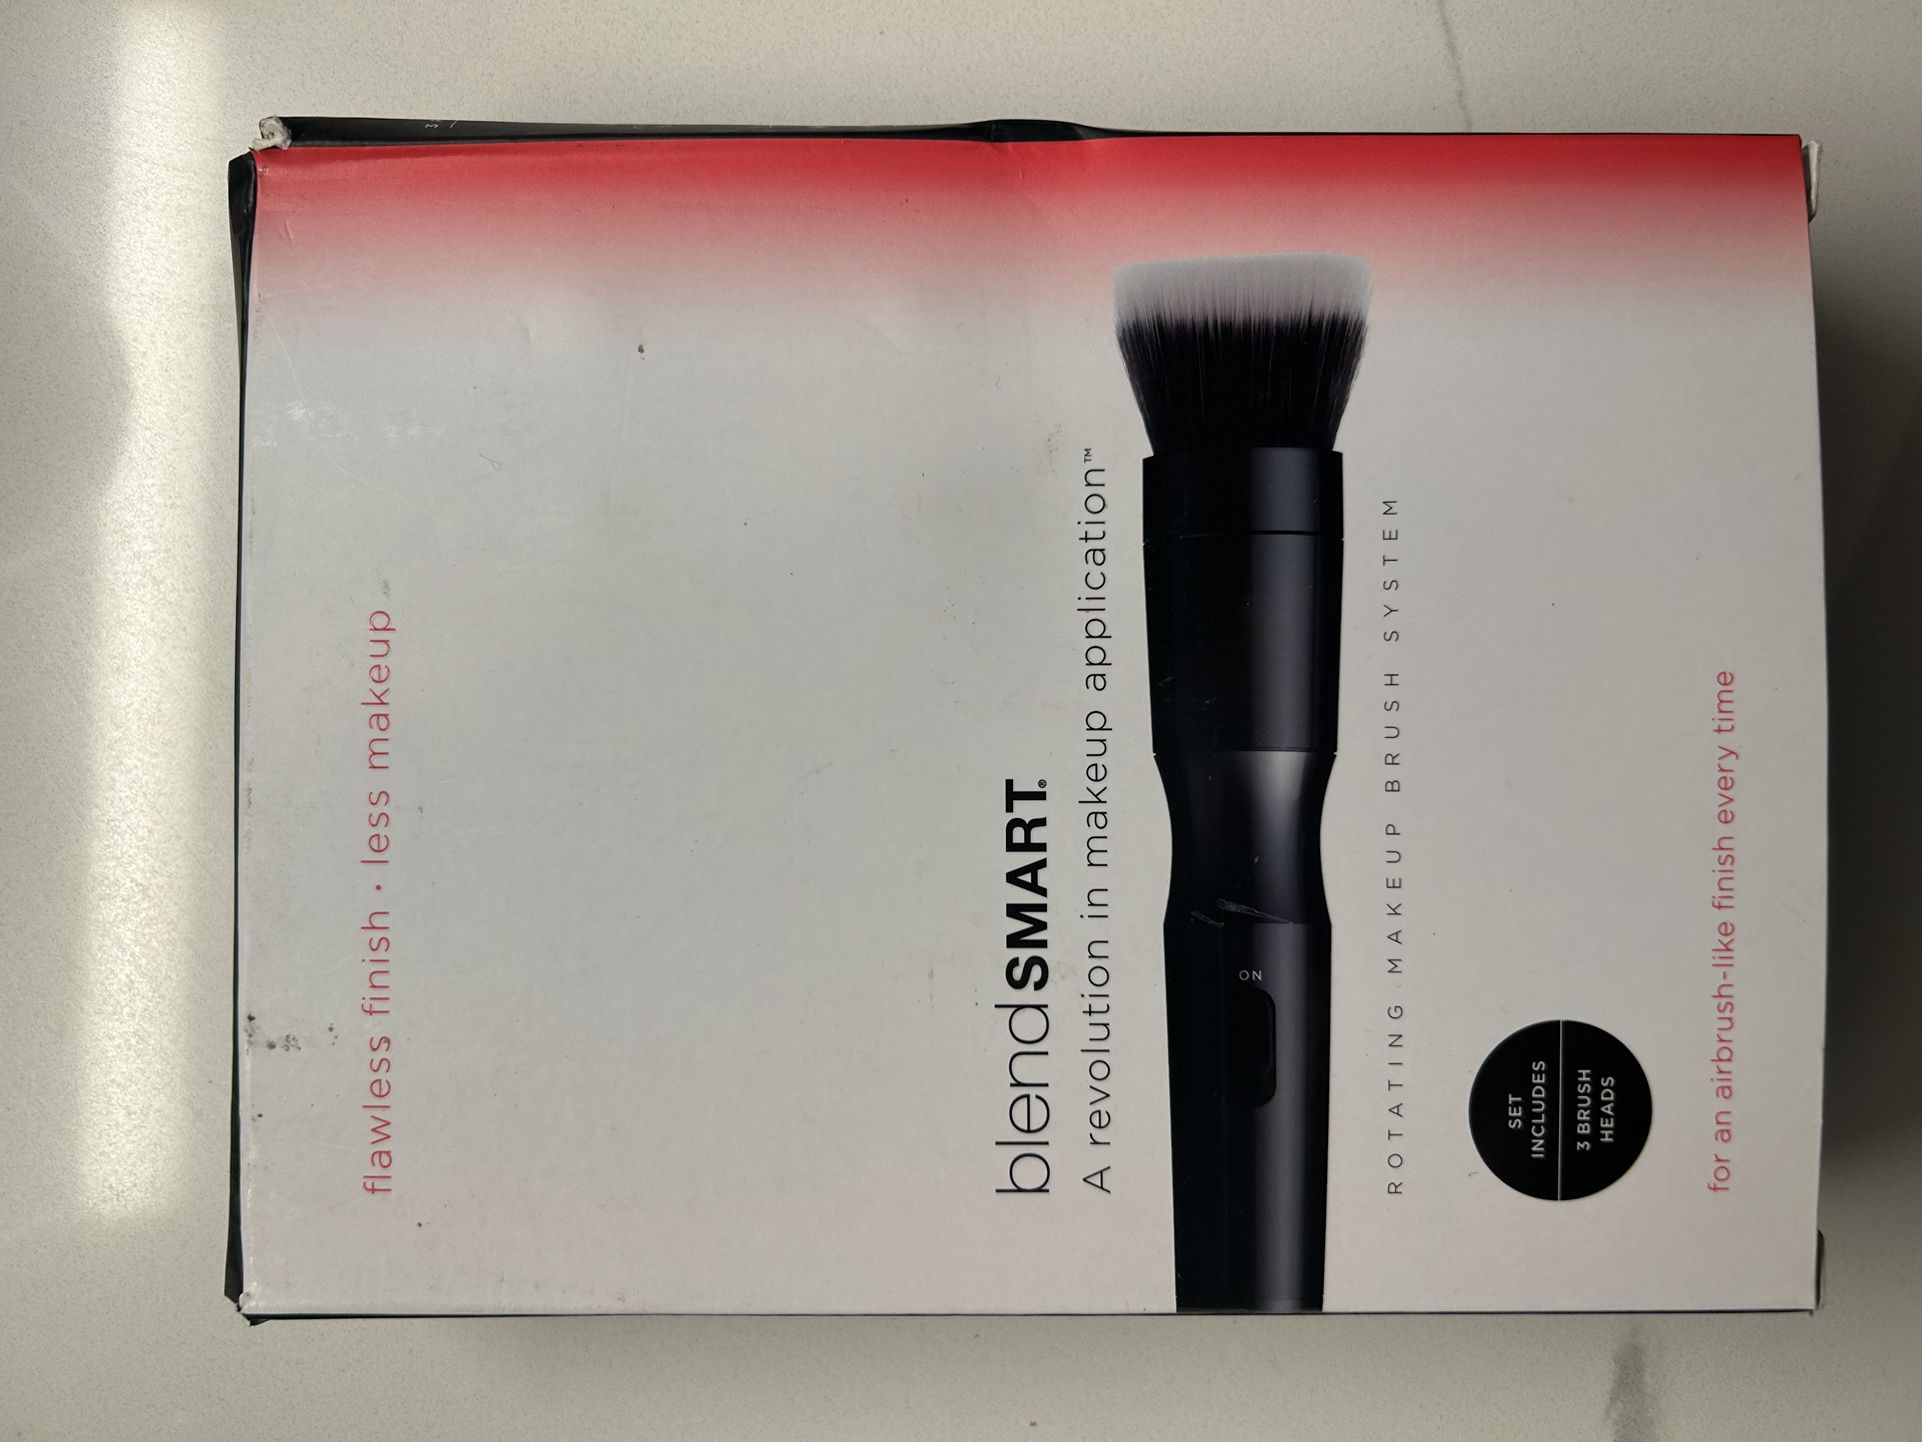 Blendsmart Rotating Blending Makeup Brush With Exchangeable Brush Tops 